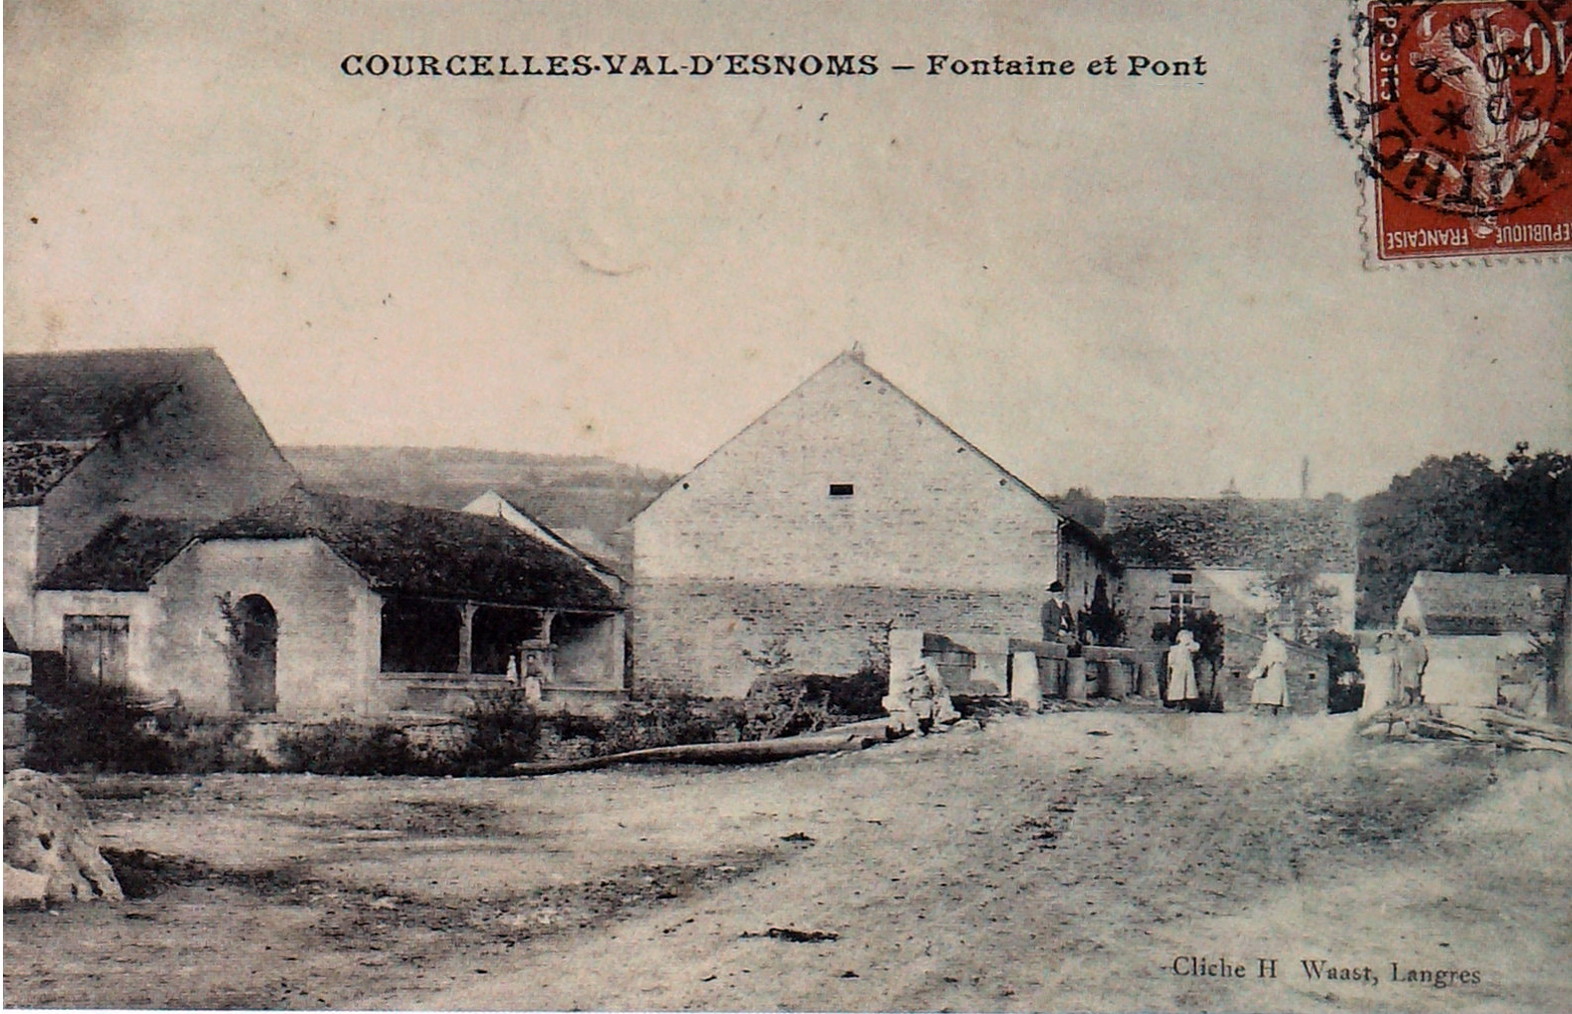 Courcelles-Val-d-Esnoms en 1939-1945